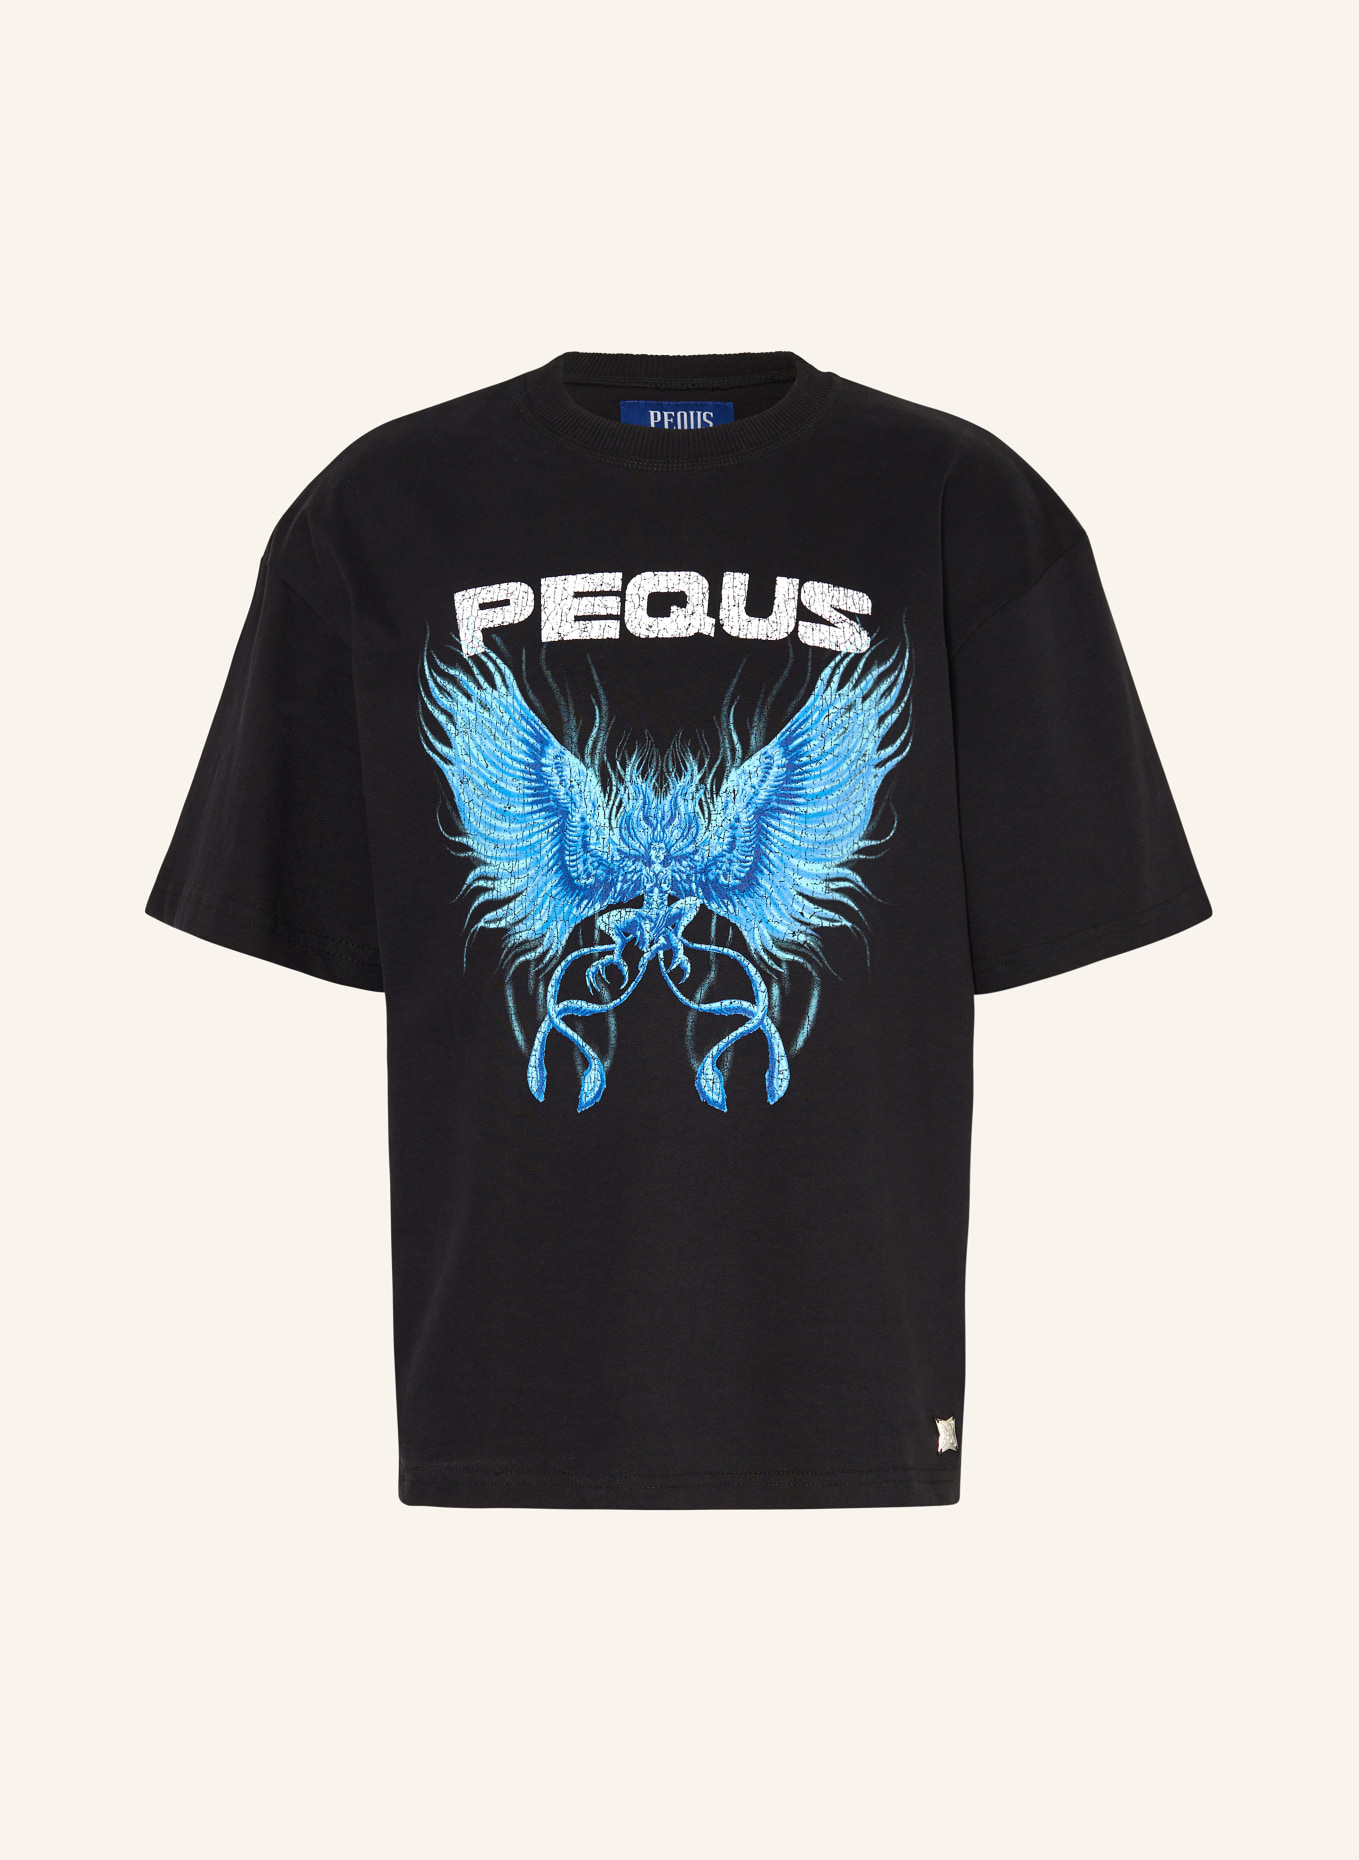 PEQUS T-Shirt, Farbe: SCHWARZ (Bild 1)